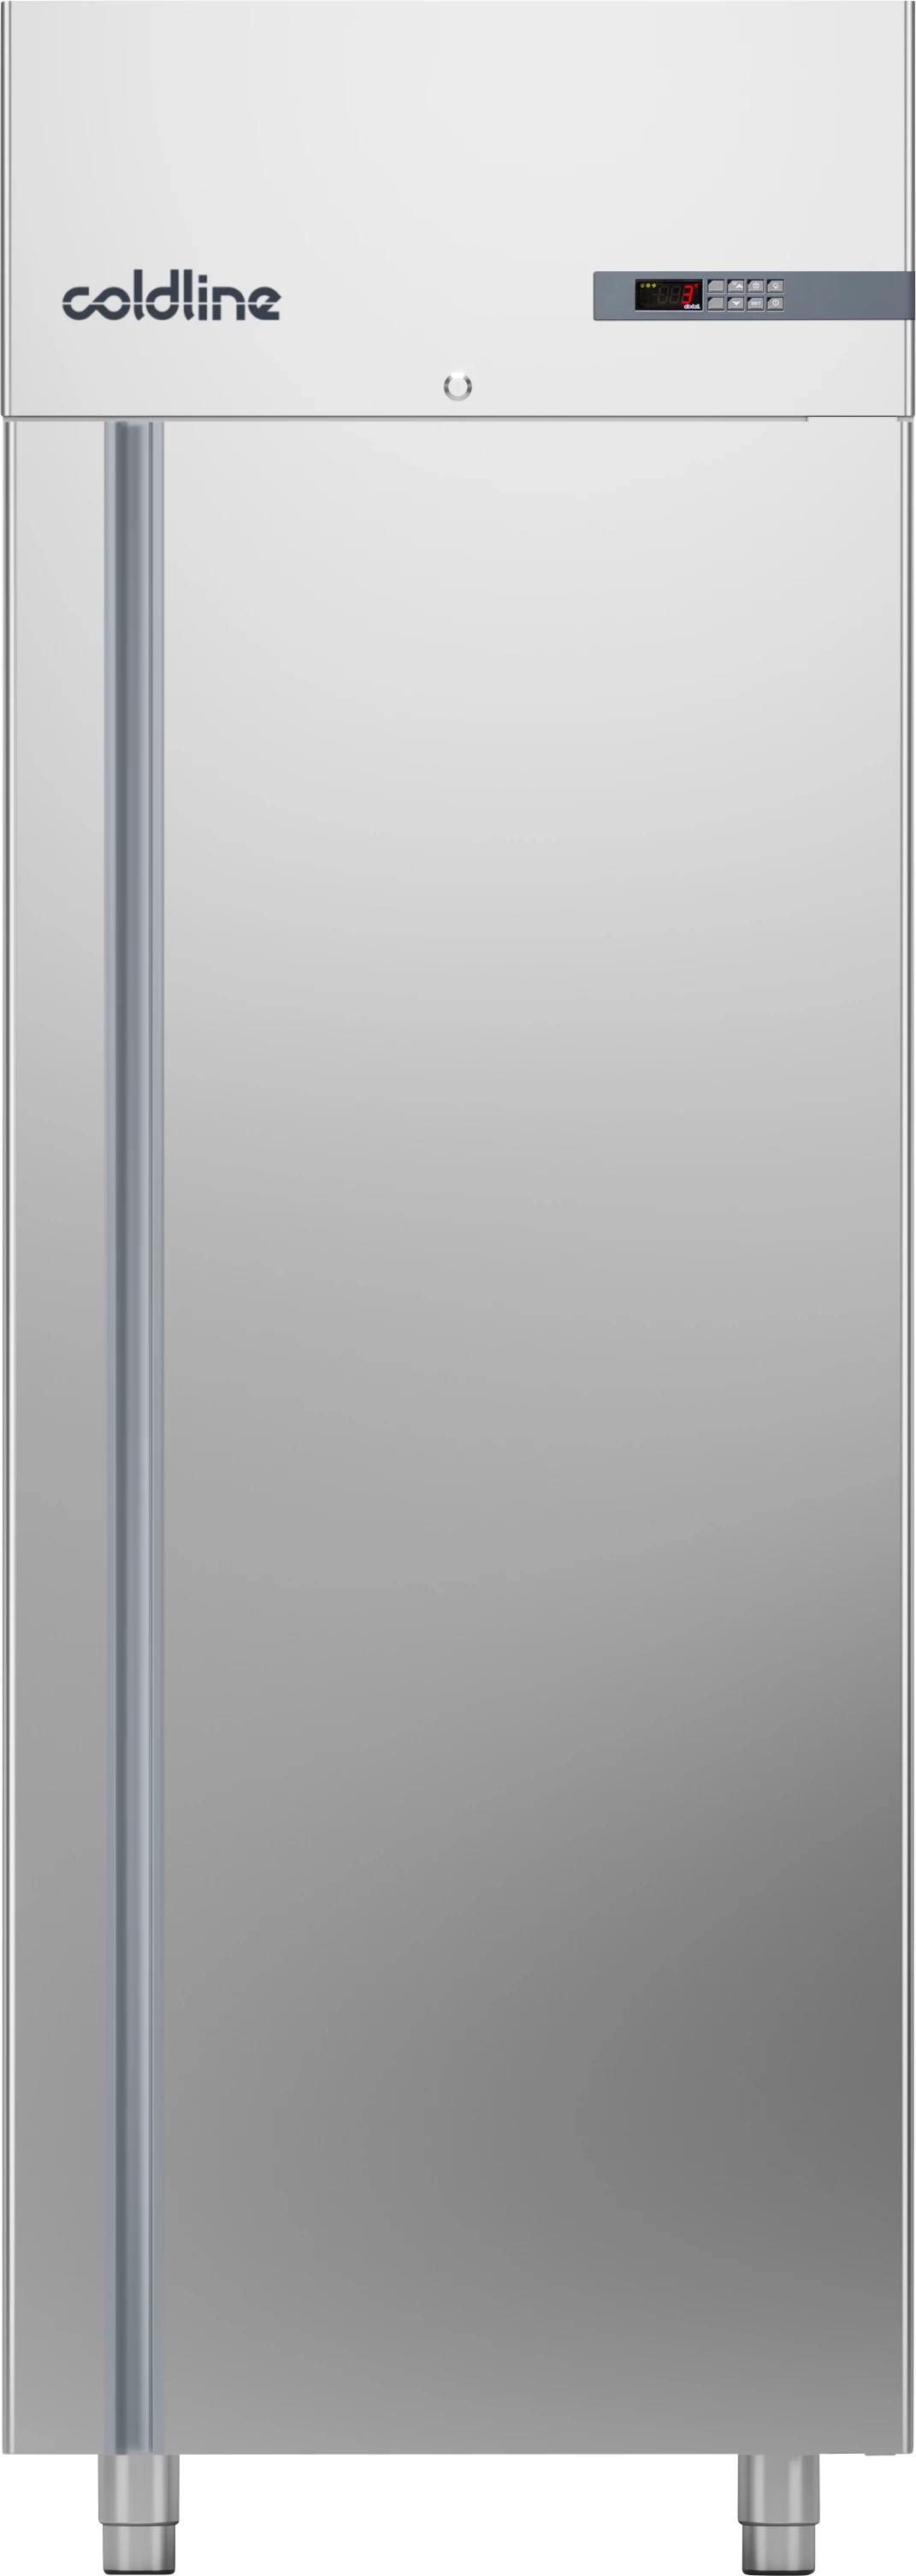 Coldline Smart A70/1NE køleskab